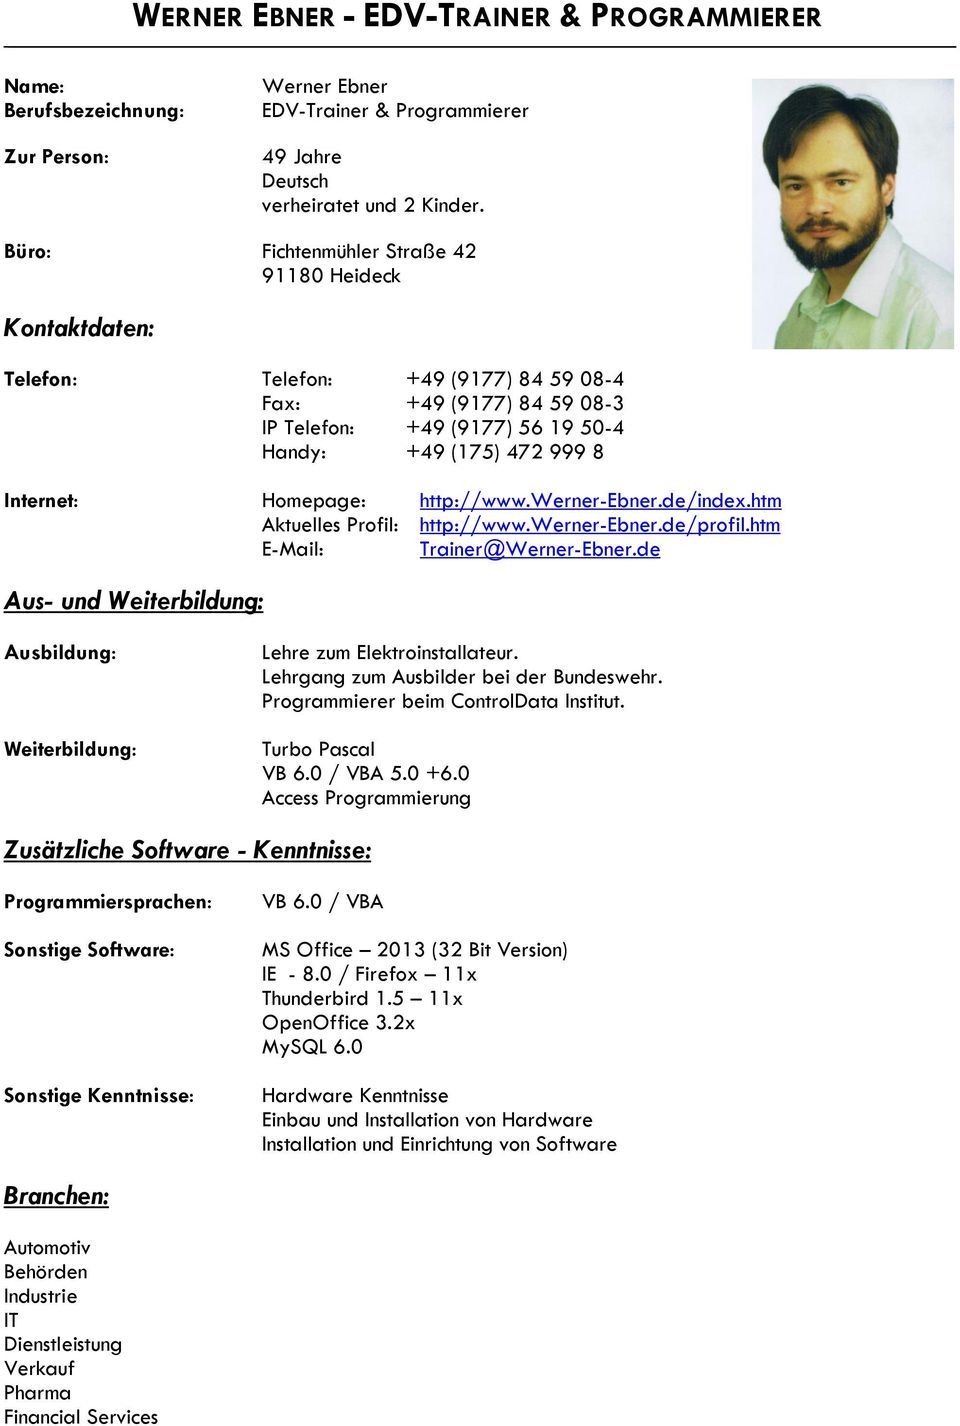 Homepage: http://www.werner-ebner.de/index.htm Aktuelles Profil: http://www.werner-ebner.de/profil.htm E-Mail: Trainer@Werner-Ebner.